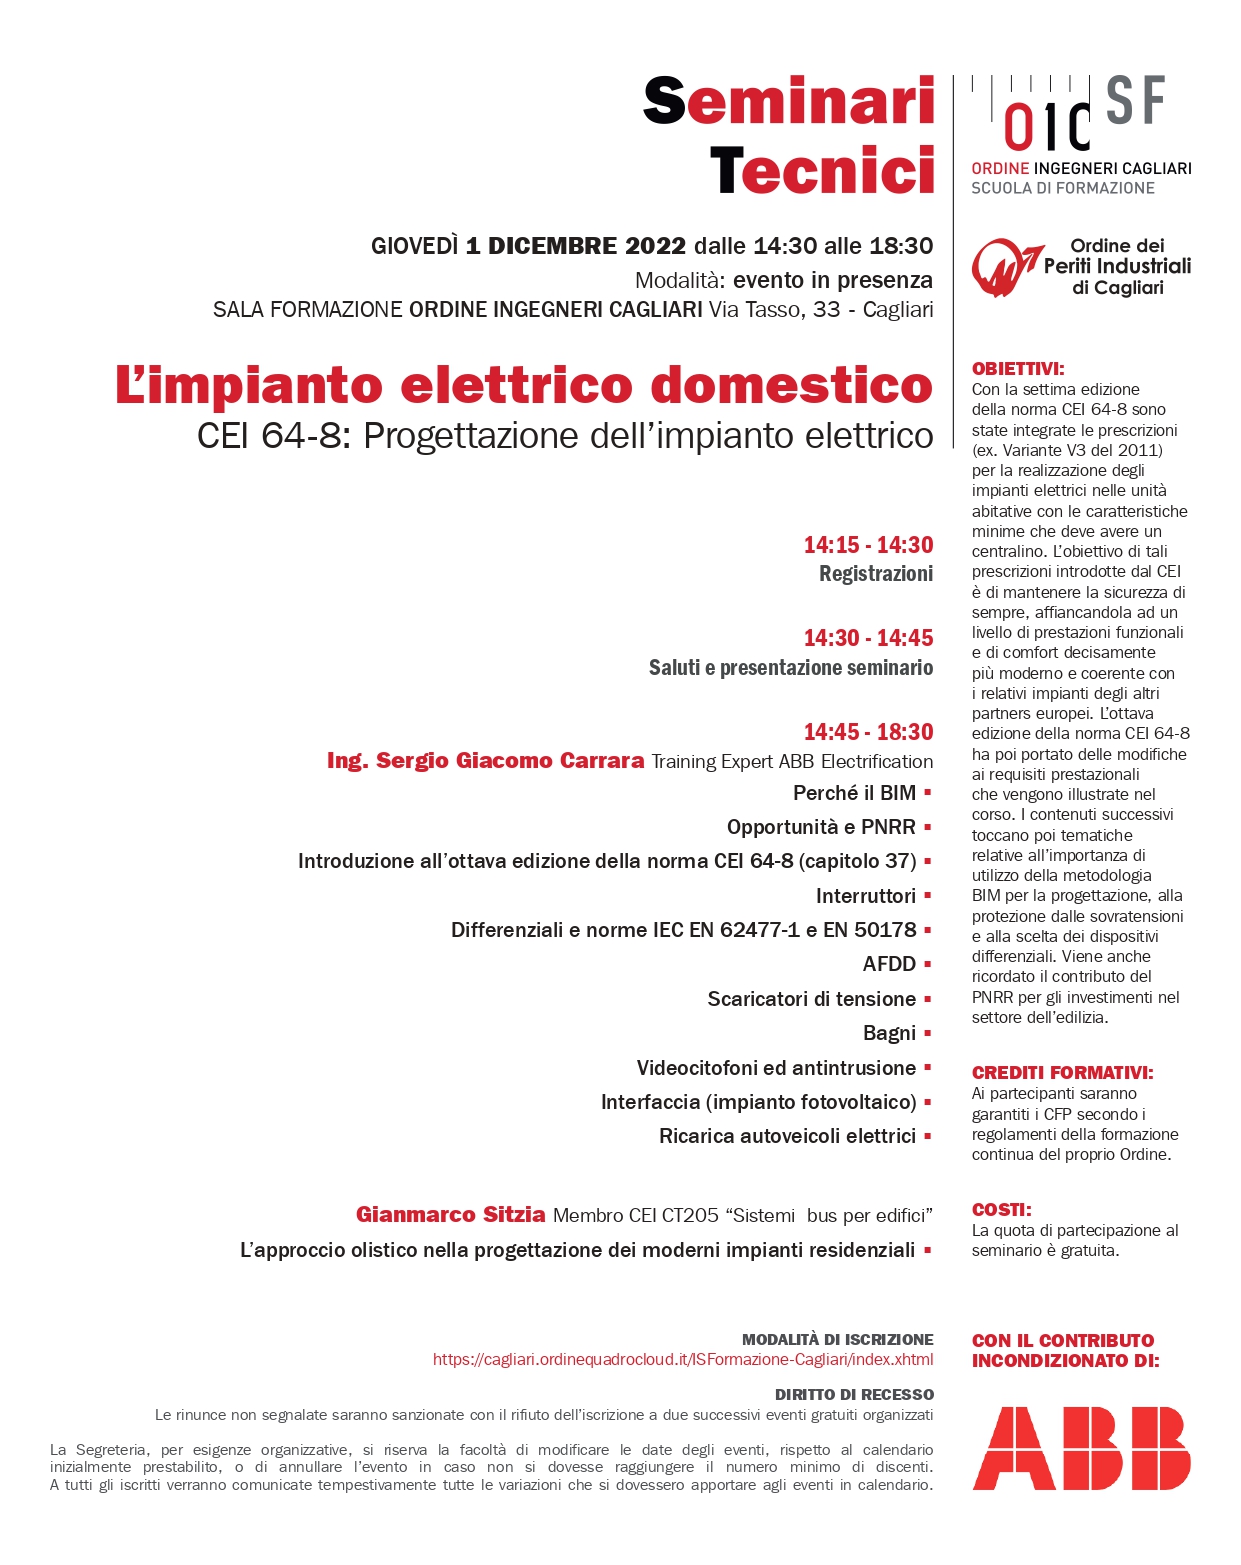 L’impianto elettrico domestico CEI 64-8: Progettazione dell’impianto elettrico